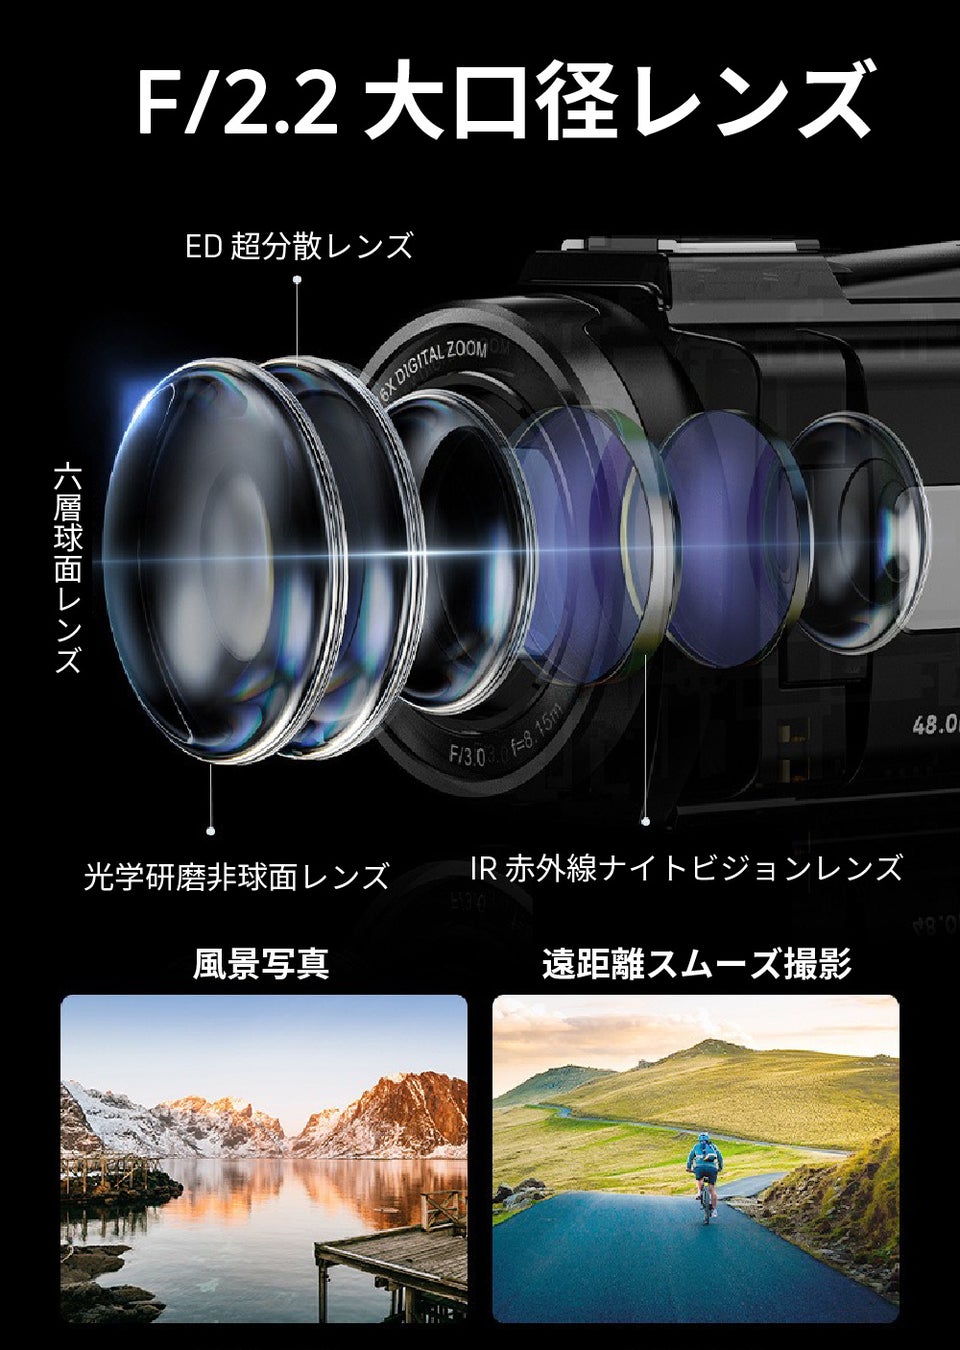 最大5Kで美しい撮影、圧倒的コスパのビデオカメラ「Gam-5KDV」をガジェットストア「MODERN g」で販売開始のサブ画像8